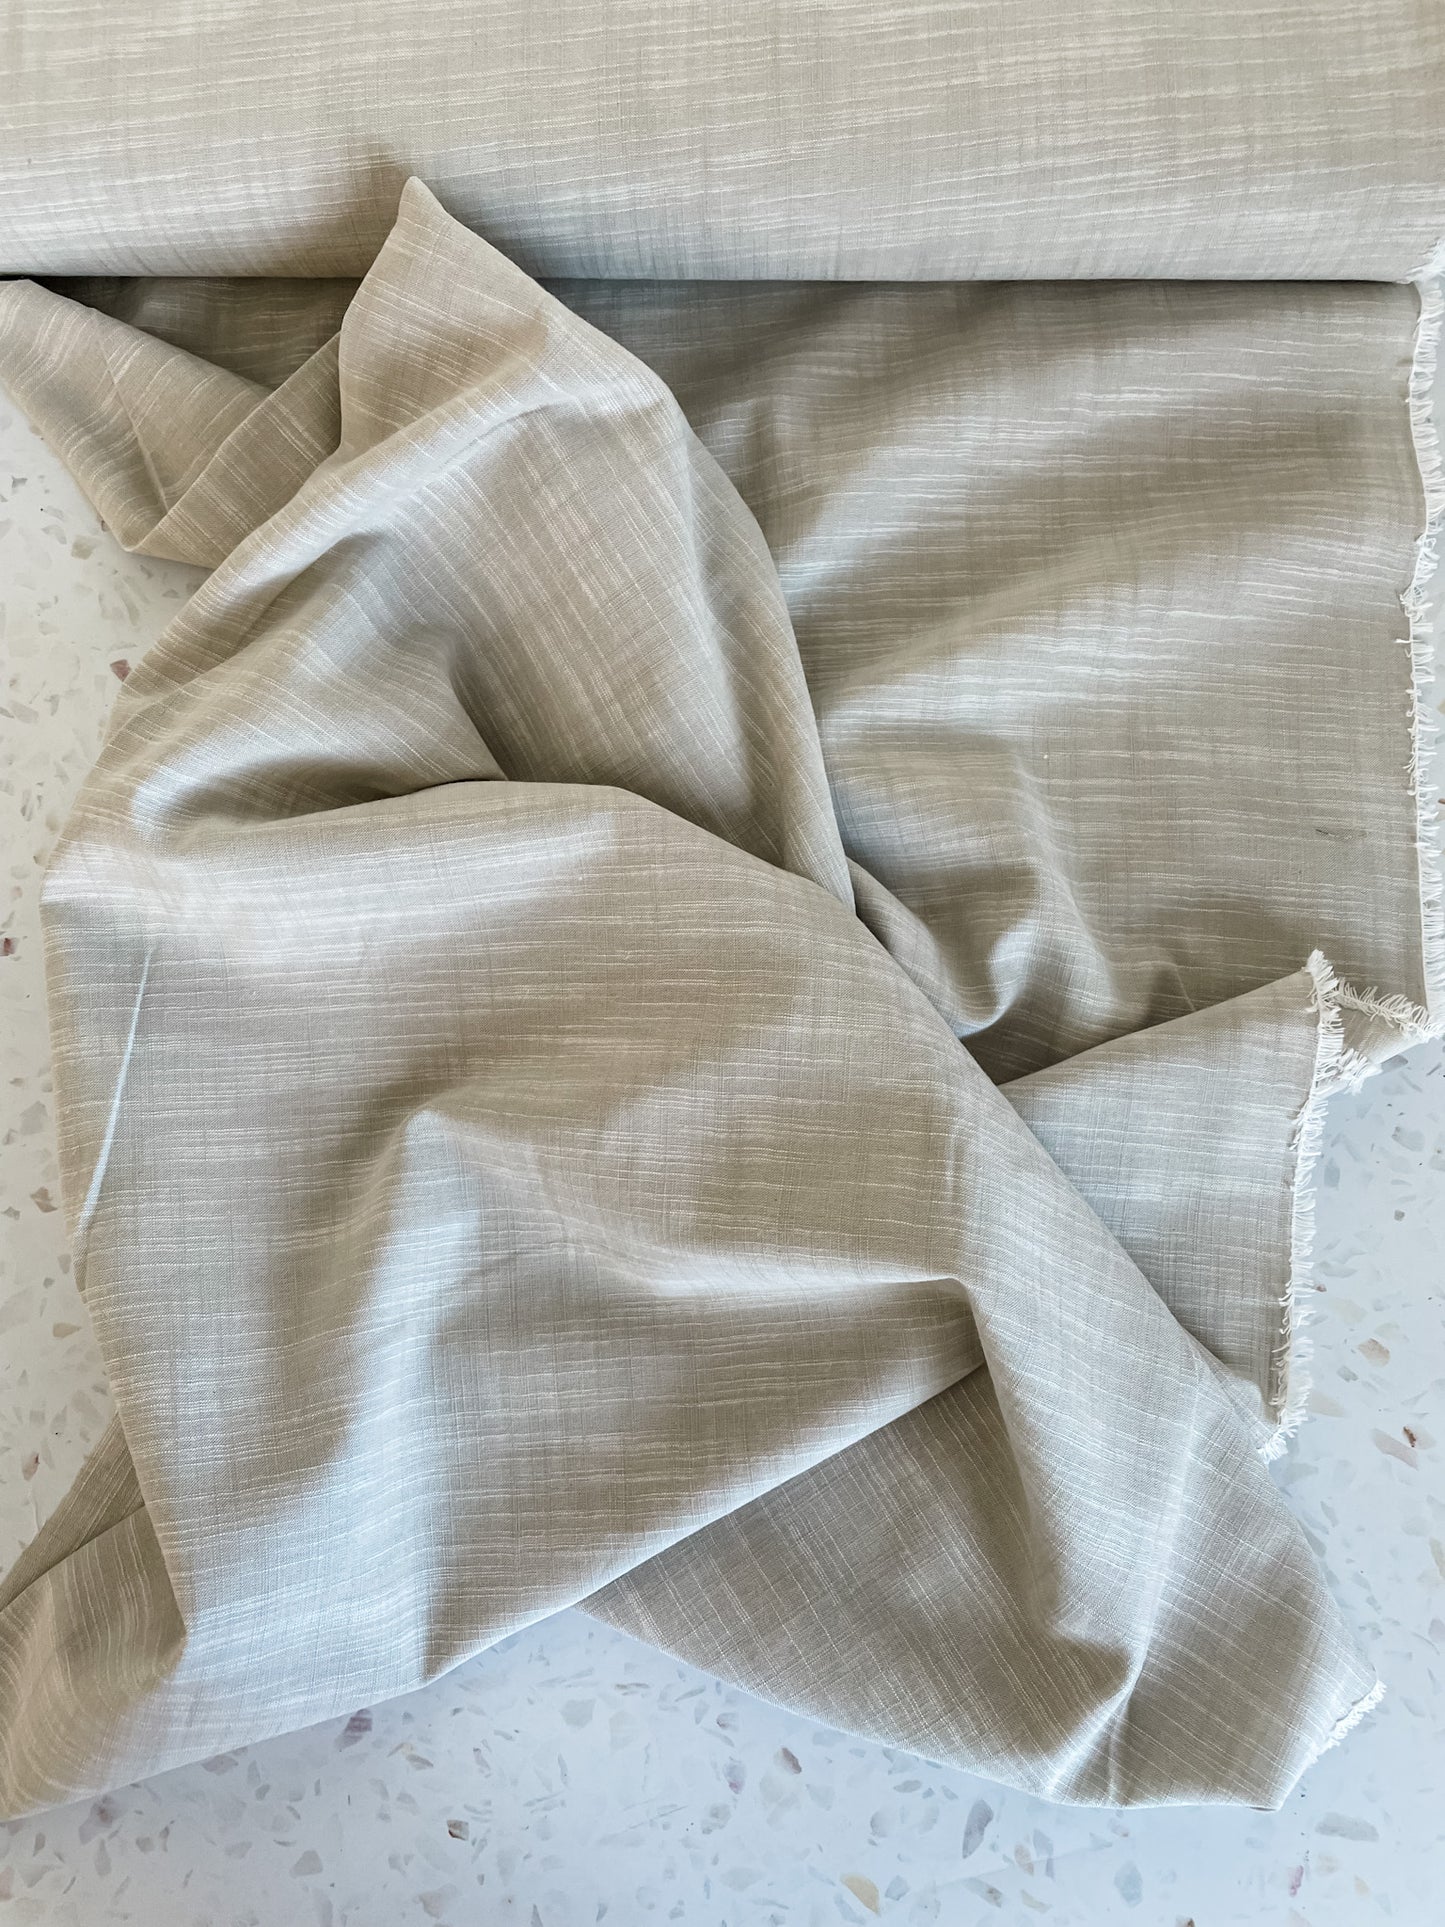 Manchester Cotton – Parchment